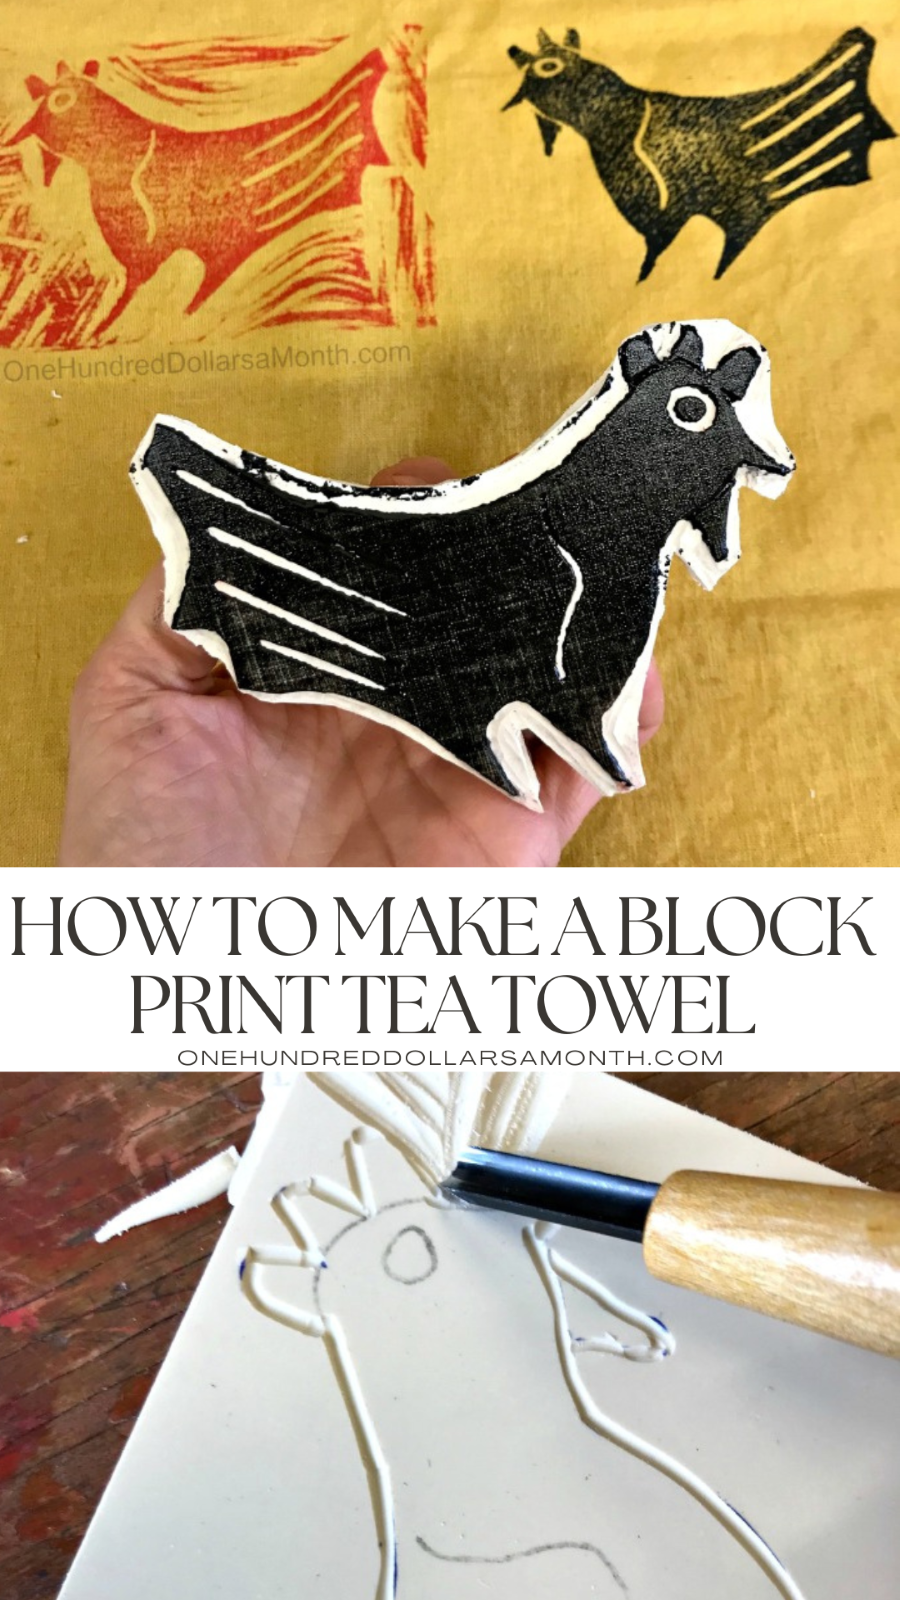 How to Make a Block Print Tea Towel